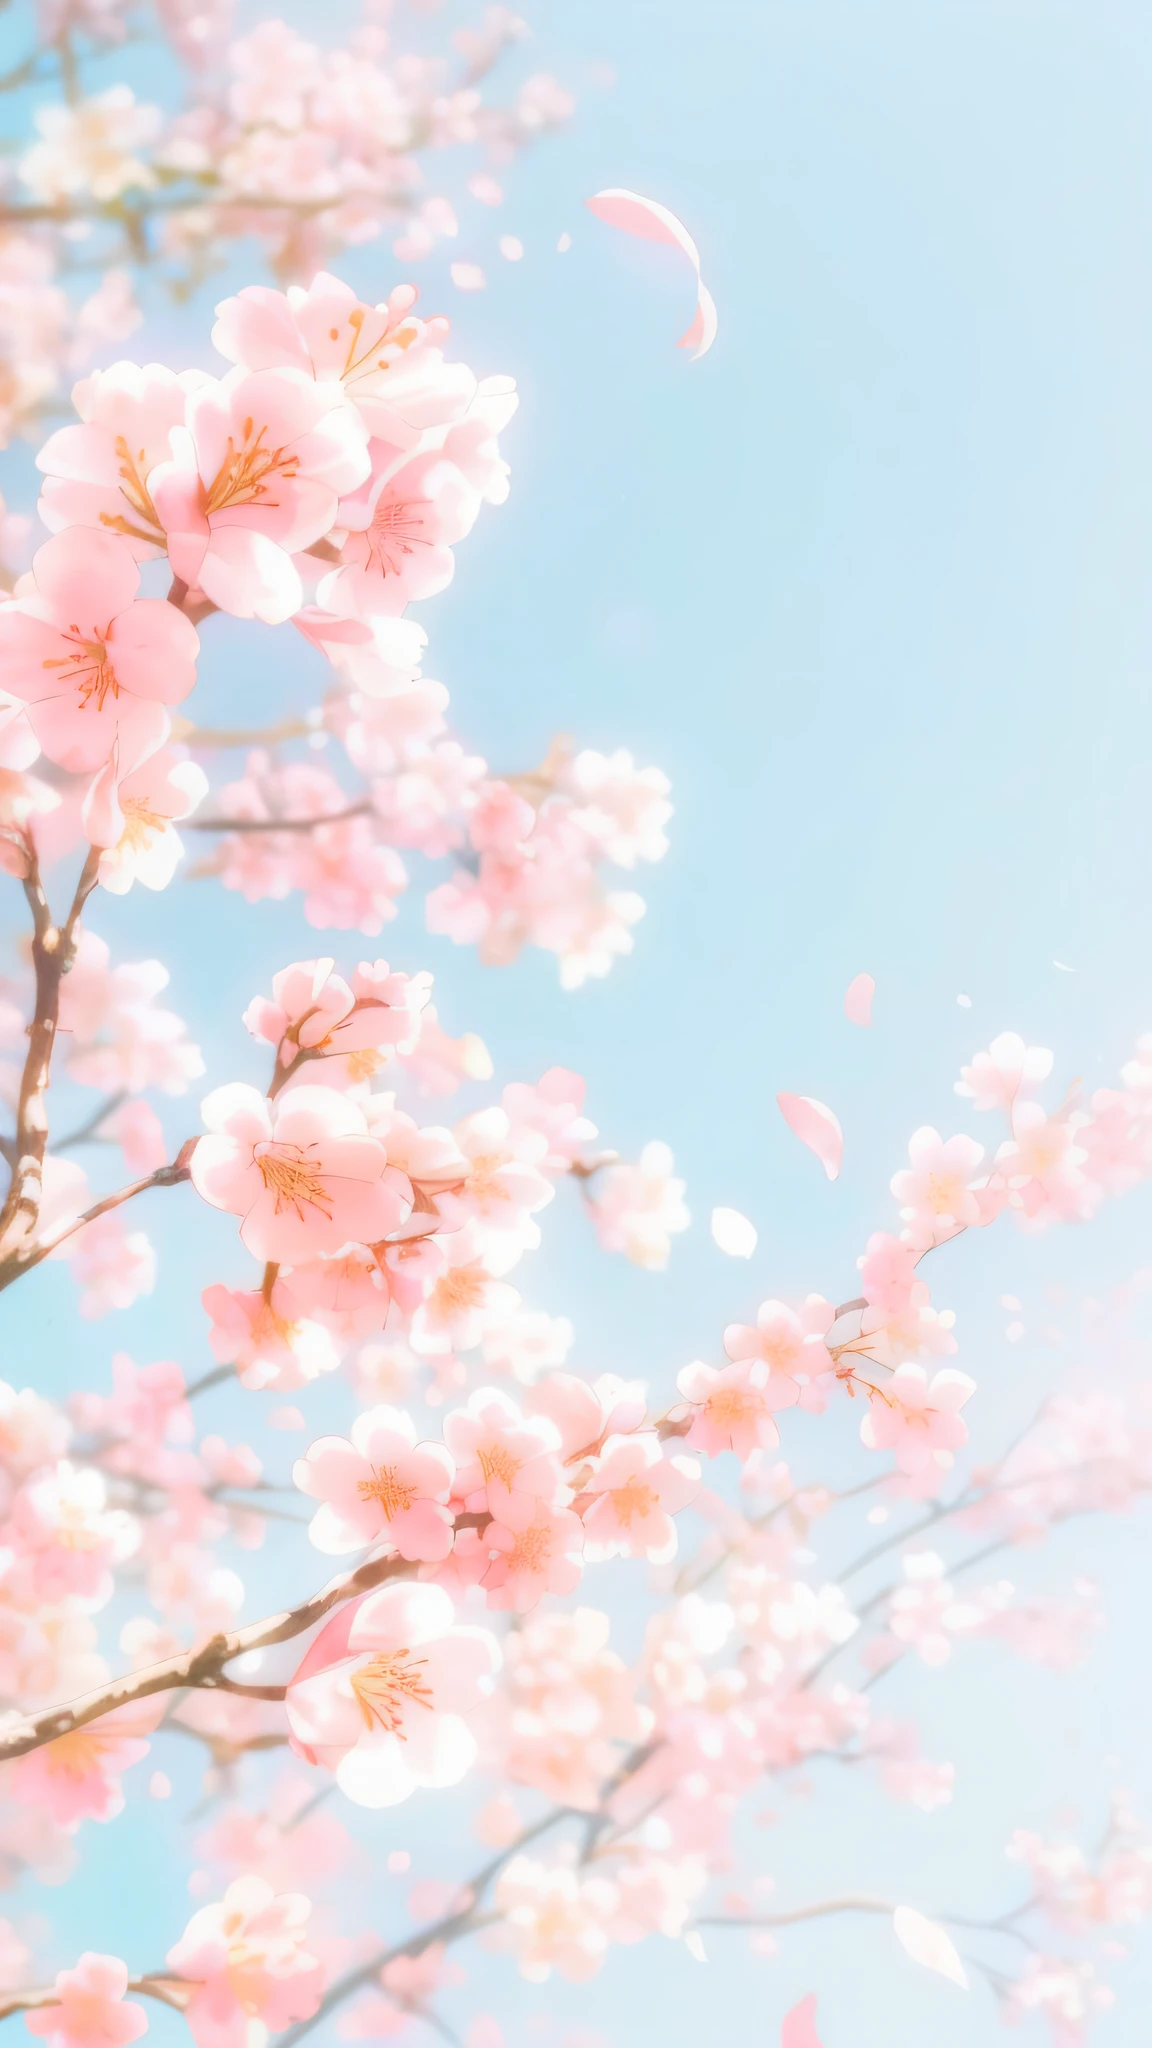 Pétalos de flor de cerezo volando